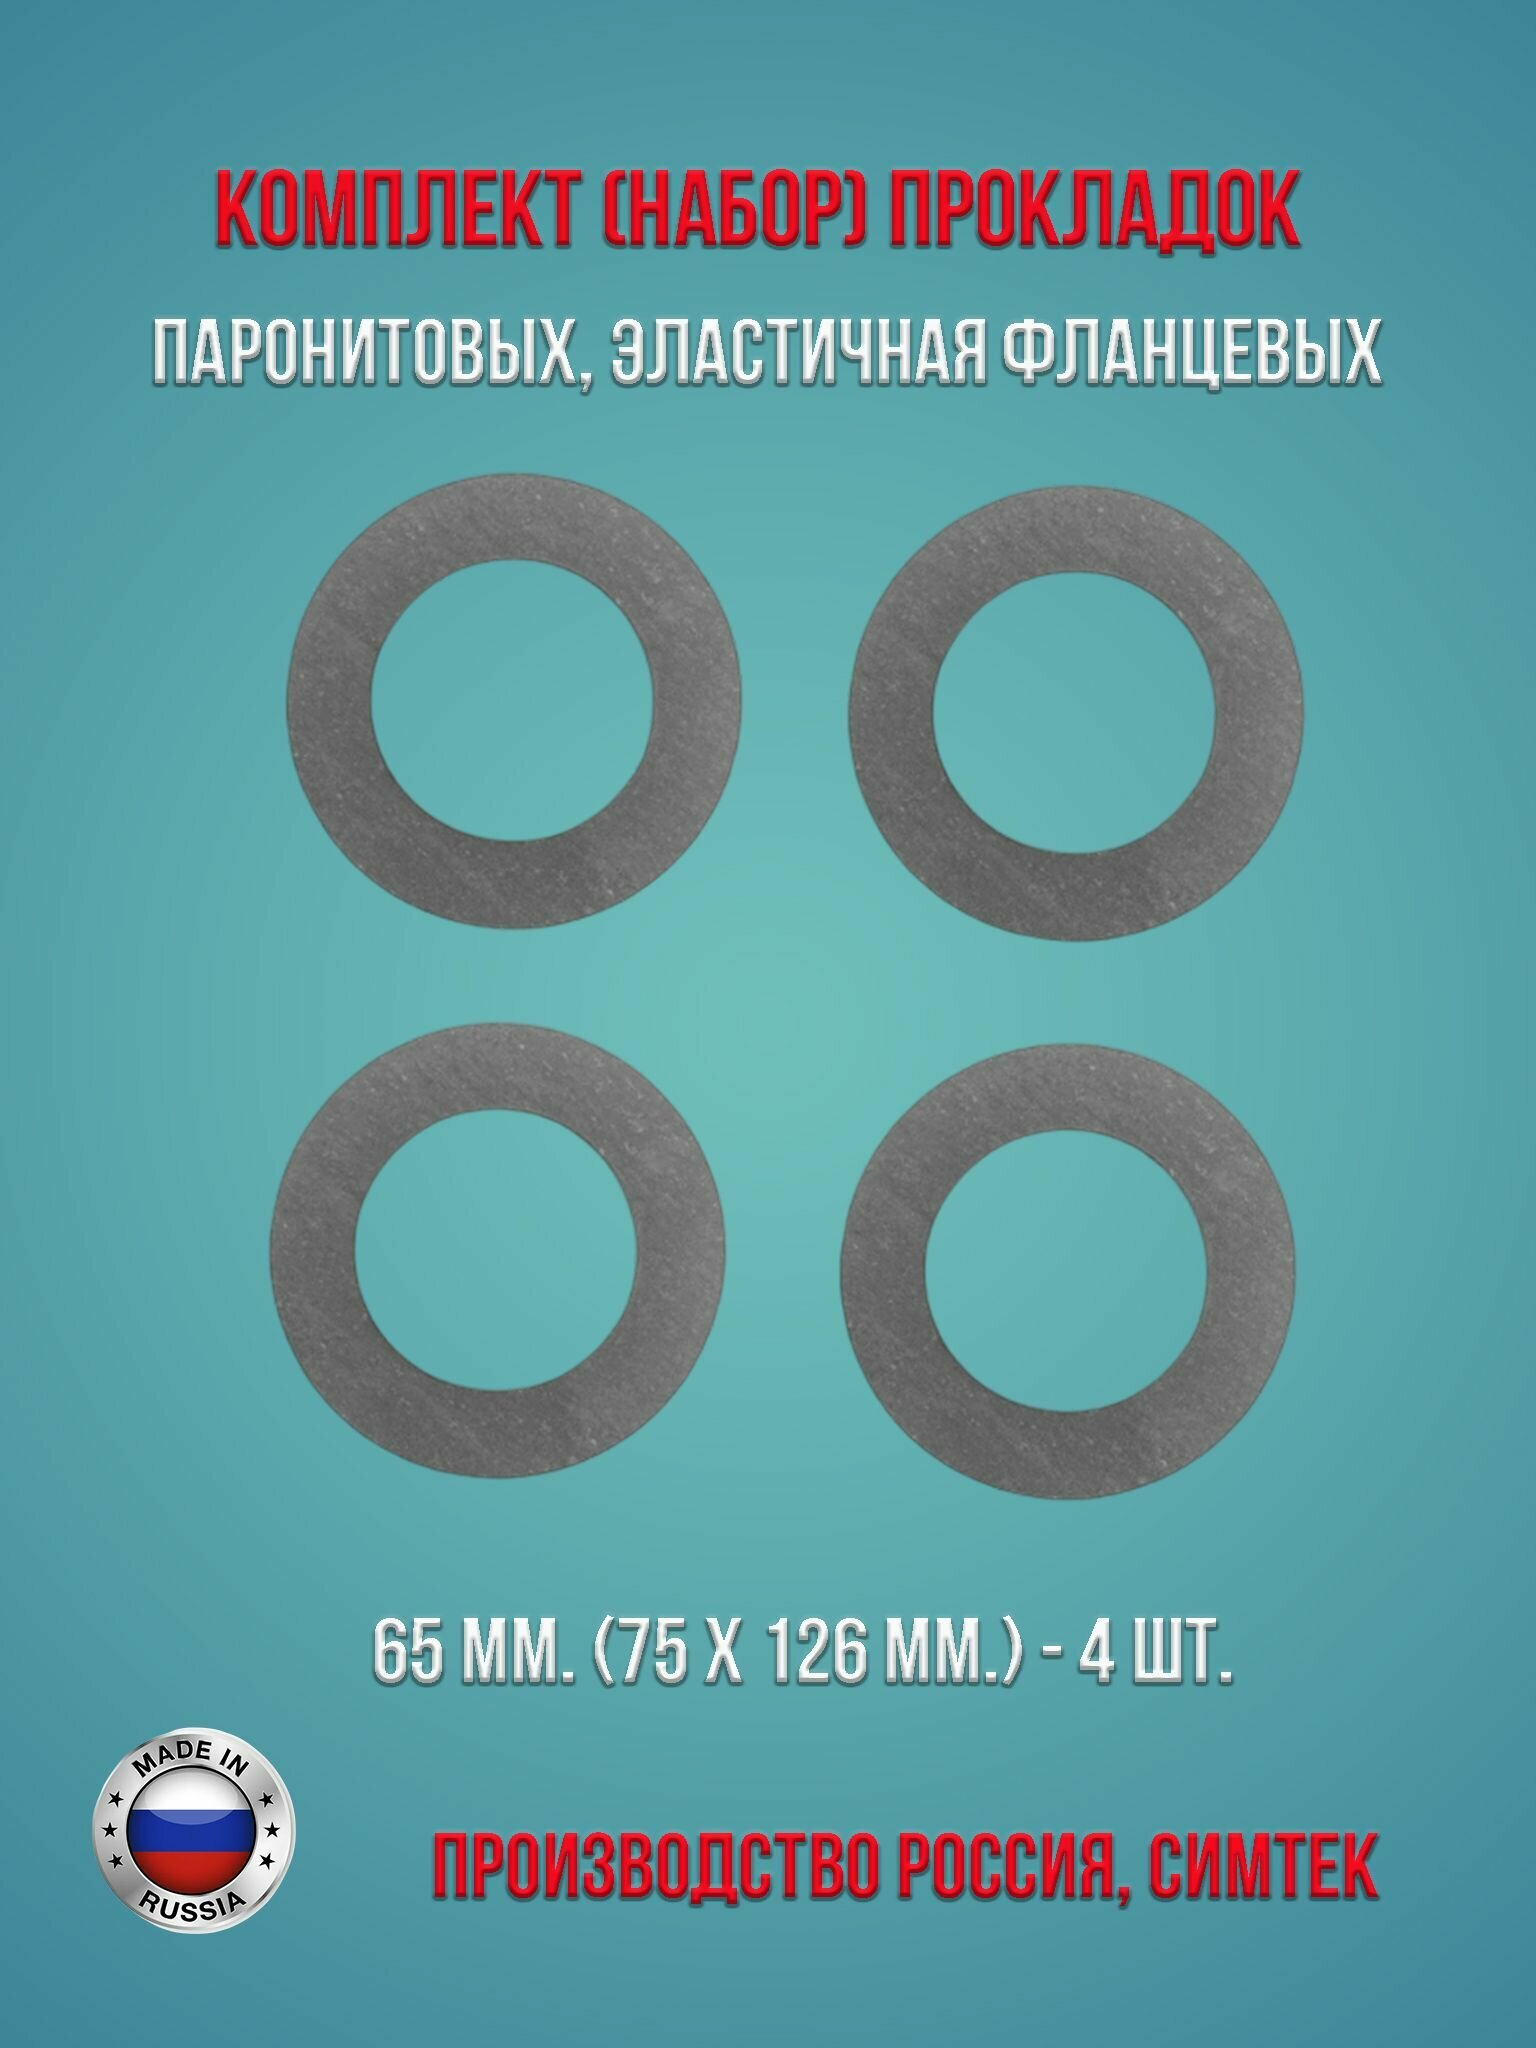 Комплект (набор) паронитовых эластичная фланцевых прокладок в соответствии с ГОСТ 15180-86 диаметр 65 мм. (75 х 126 мм.) 4 штуки